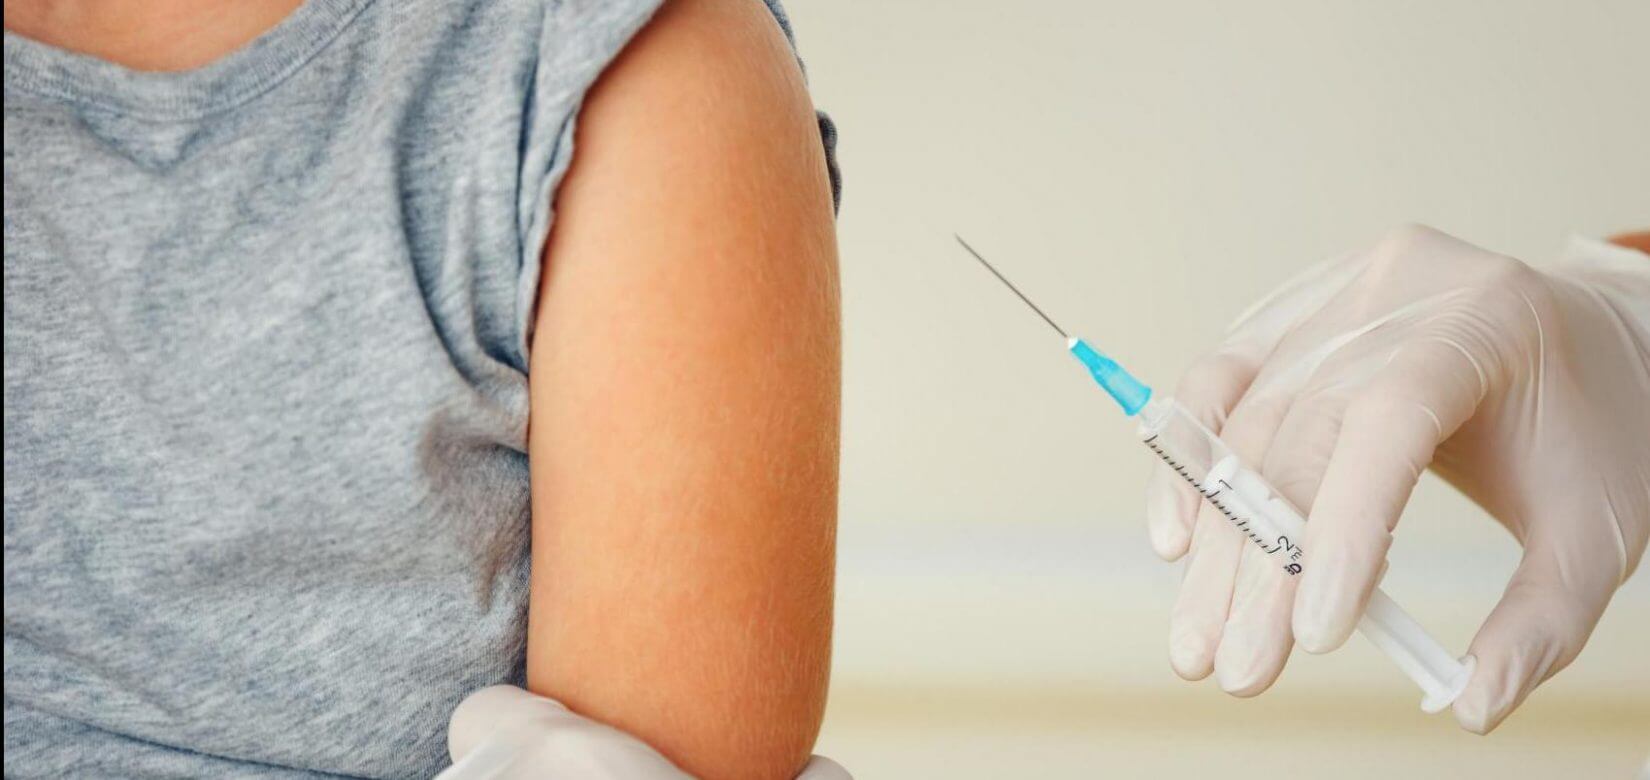 Κορονοϊός: Εξαντλήθηκαν τα πρώτα εμβόλια για παιδιά - Πηγαίνουν με ενθουσιασμό να εμβολιαστούν λέει ο Σπ. Μαζάνης